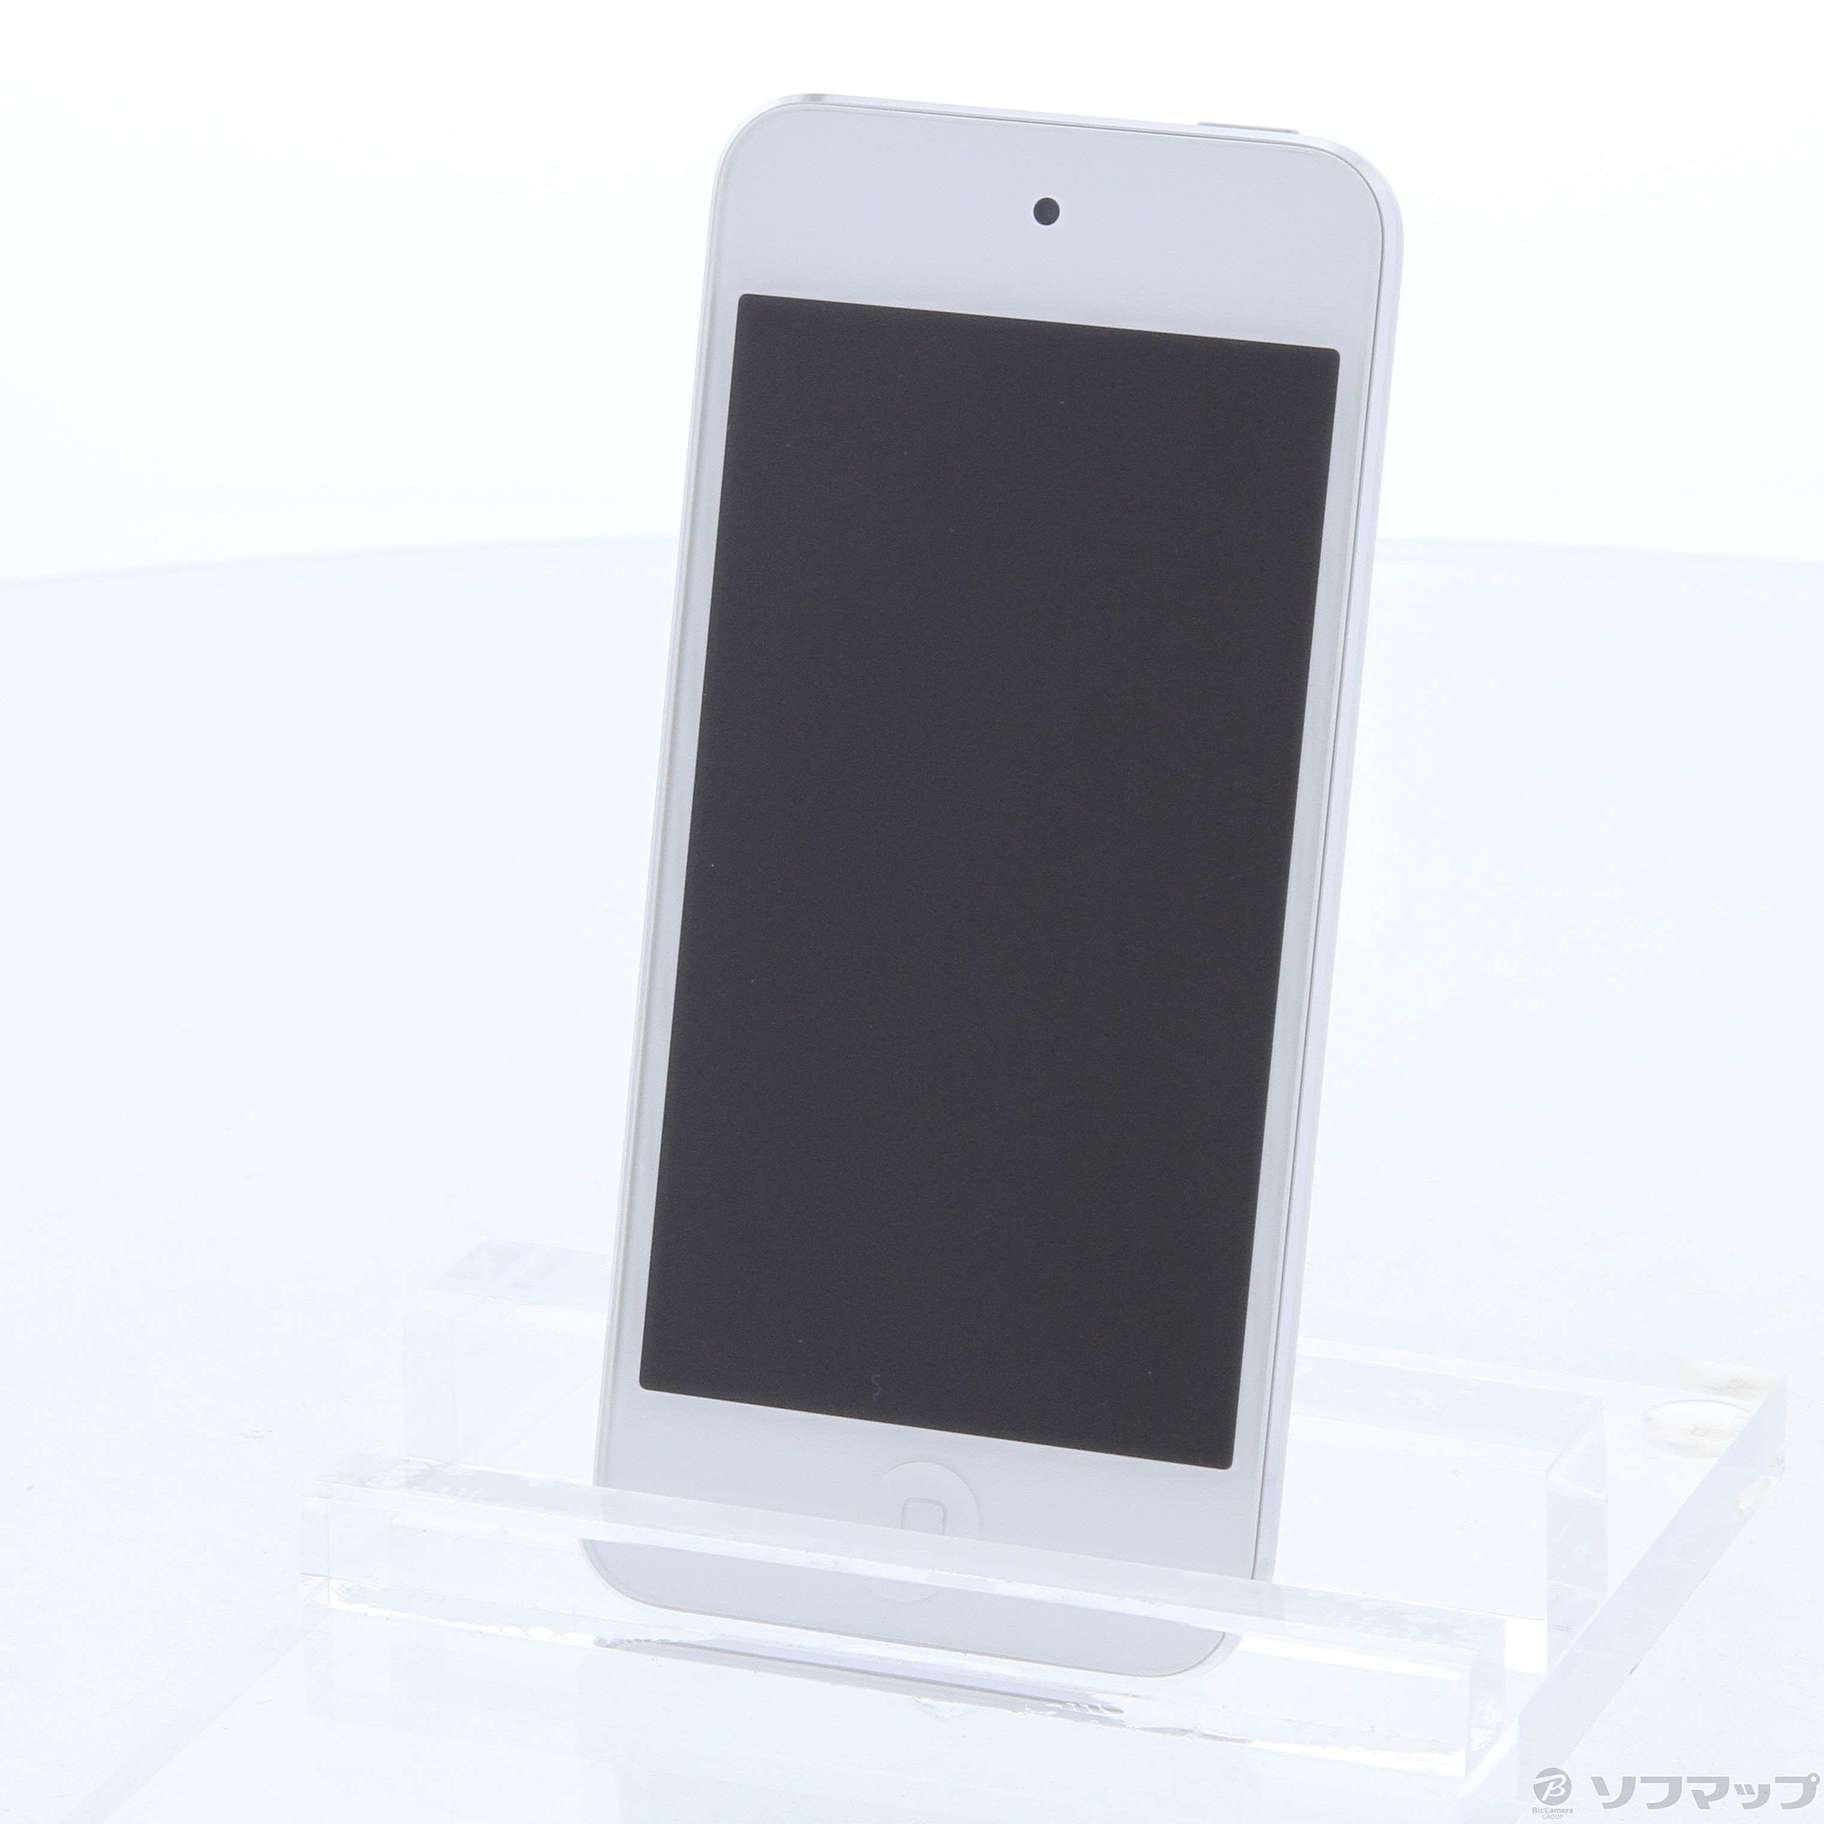 中古】セール対象品 iPod touch第6世代 メモリ128GB シルバー MKWR2J